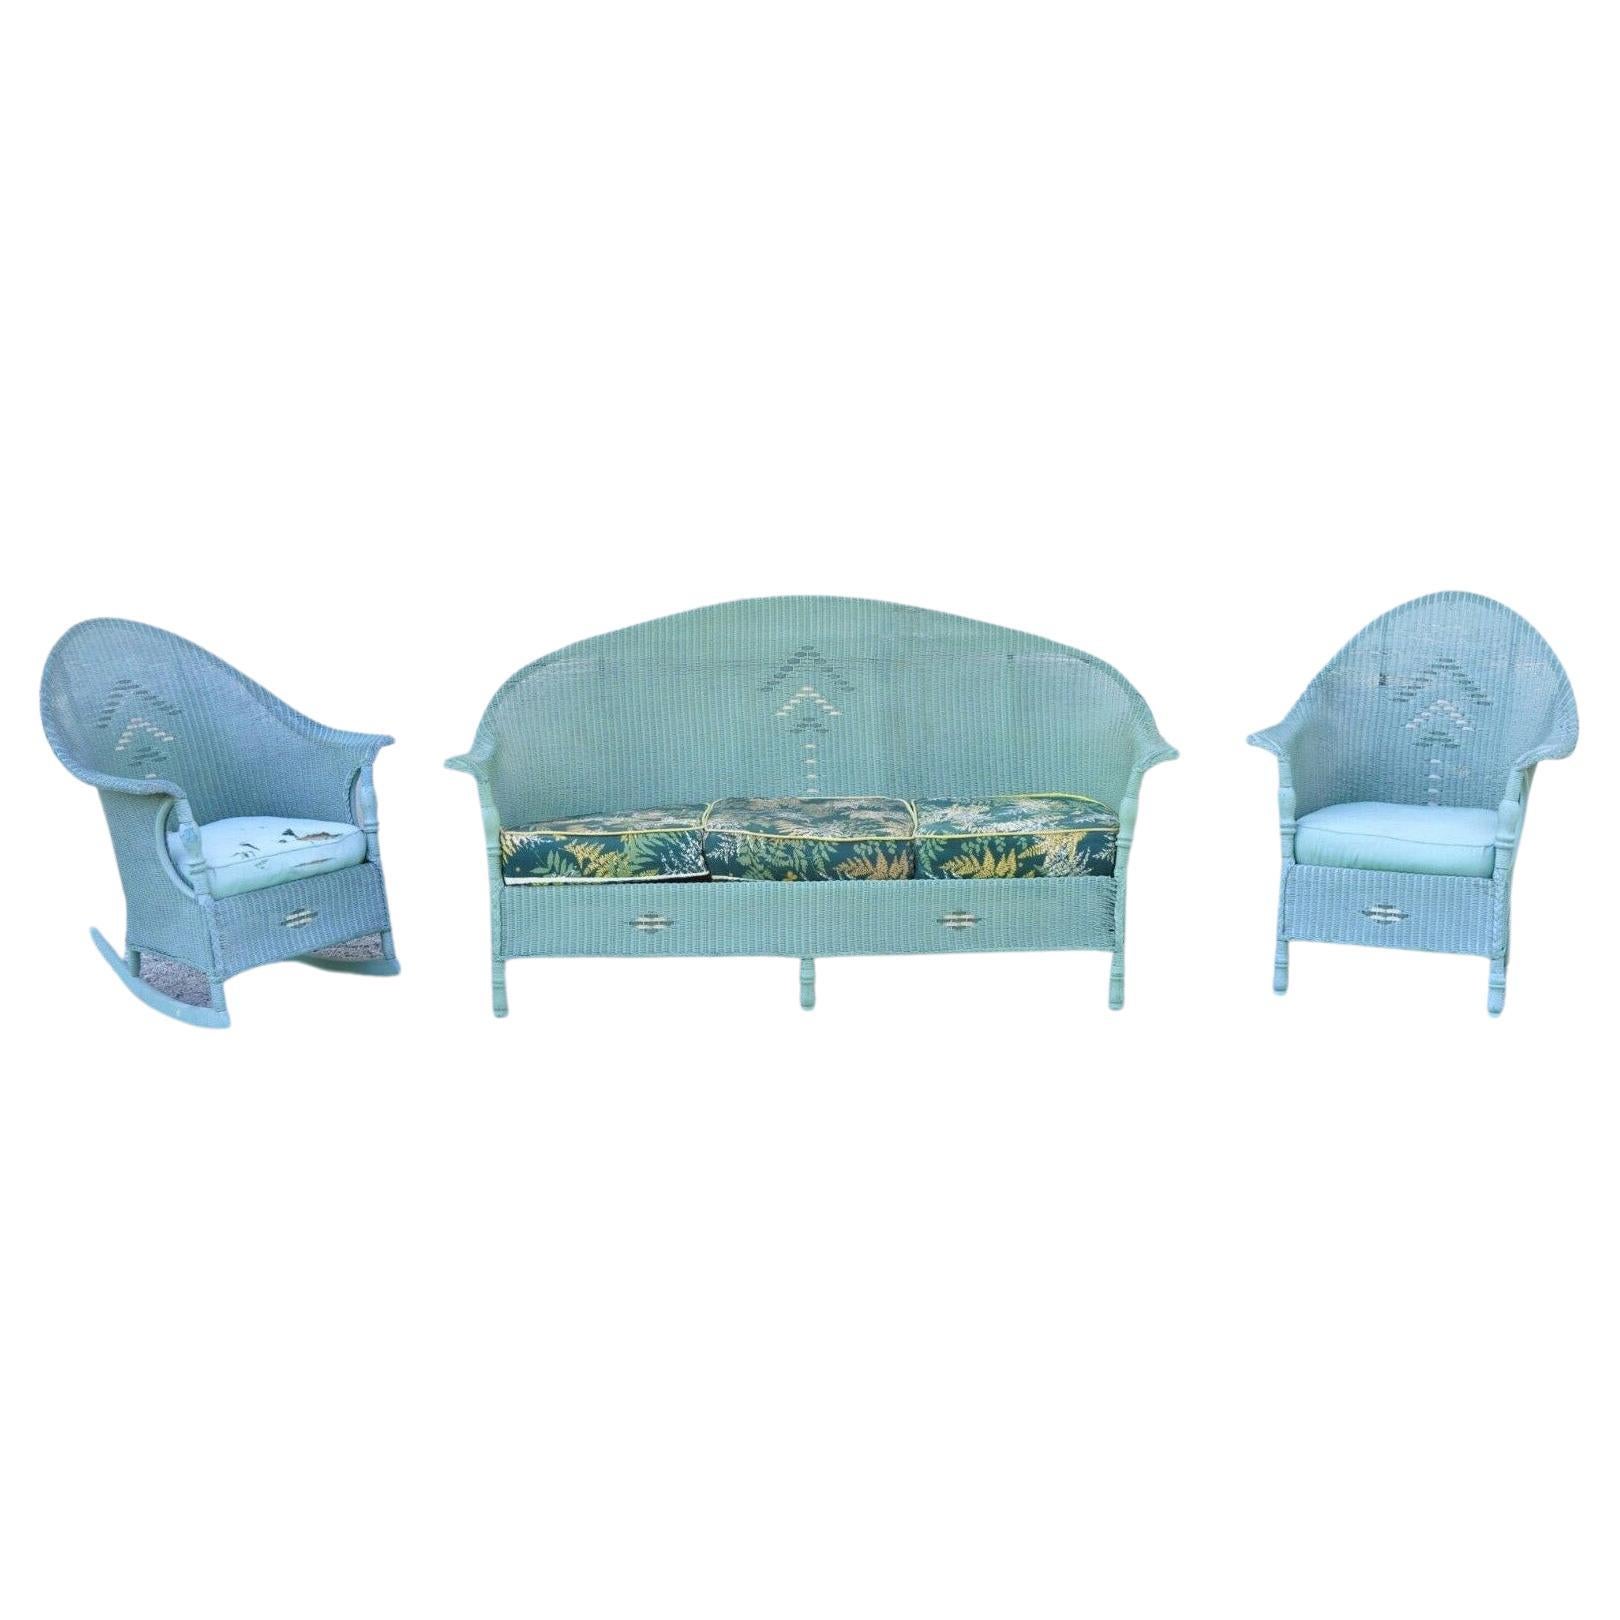 Victorian Blue Green Wovener Sunroom Sofa Rocking Chair Lounge Chair 3 Pcs en vente